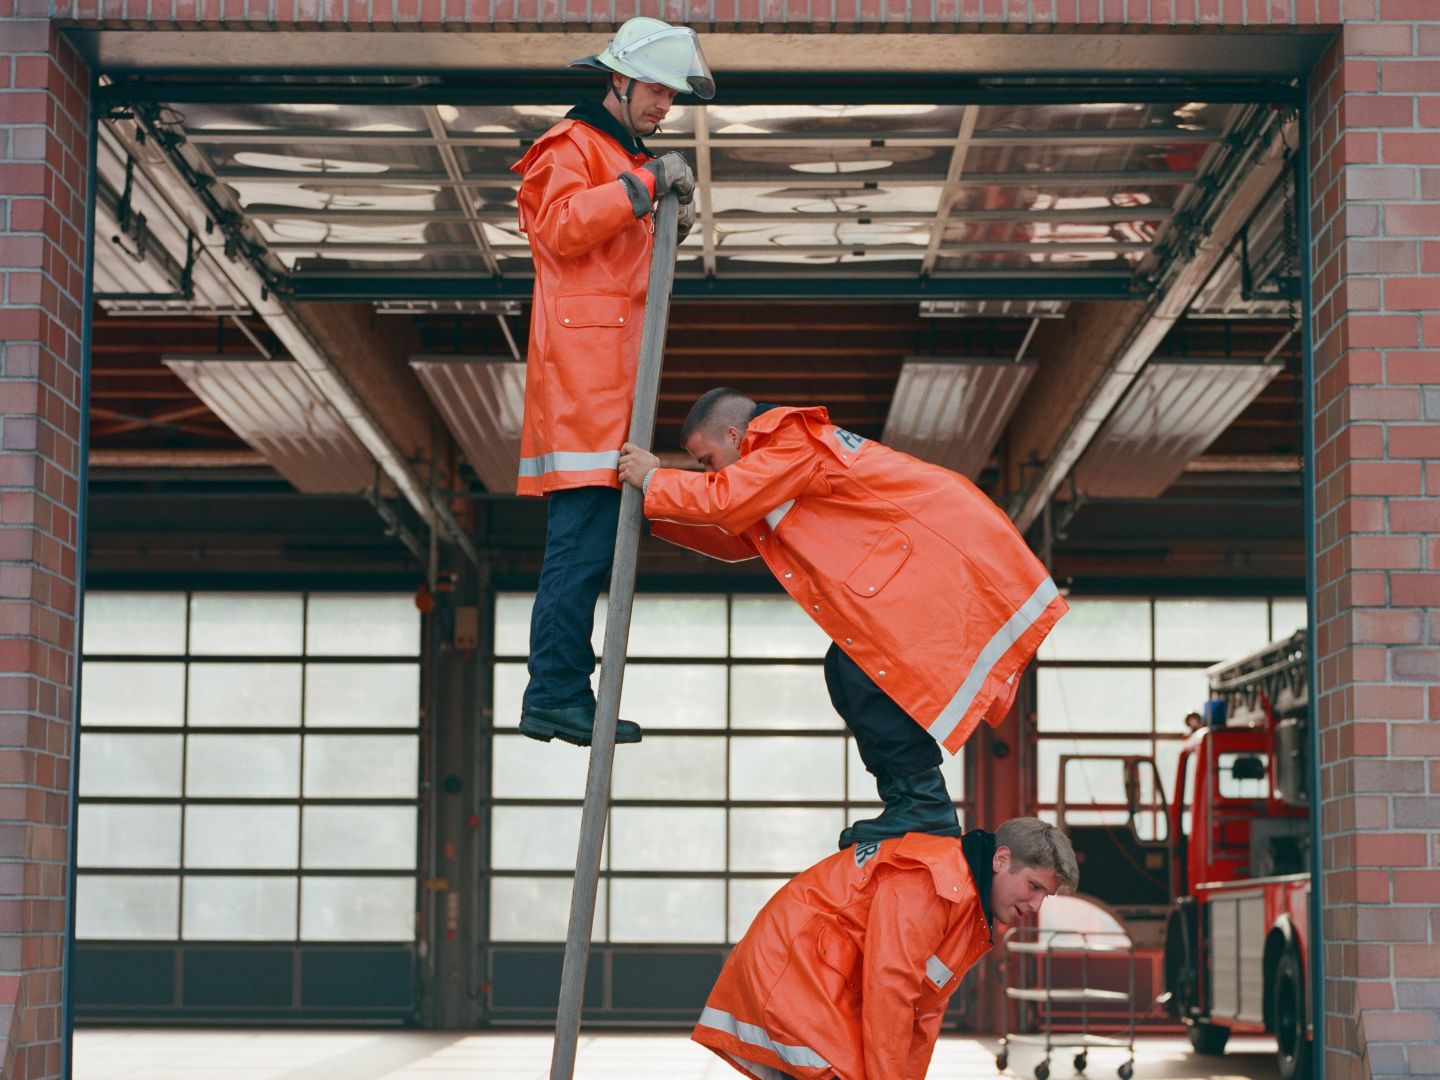 Plakatmotiv von Die Physiker. Auf dem Bild stehen drei Männer auf einem Leiter, beziehungsweise auf einander in orangenem Arbeiterkleidung .